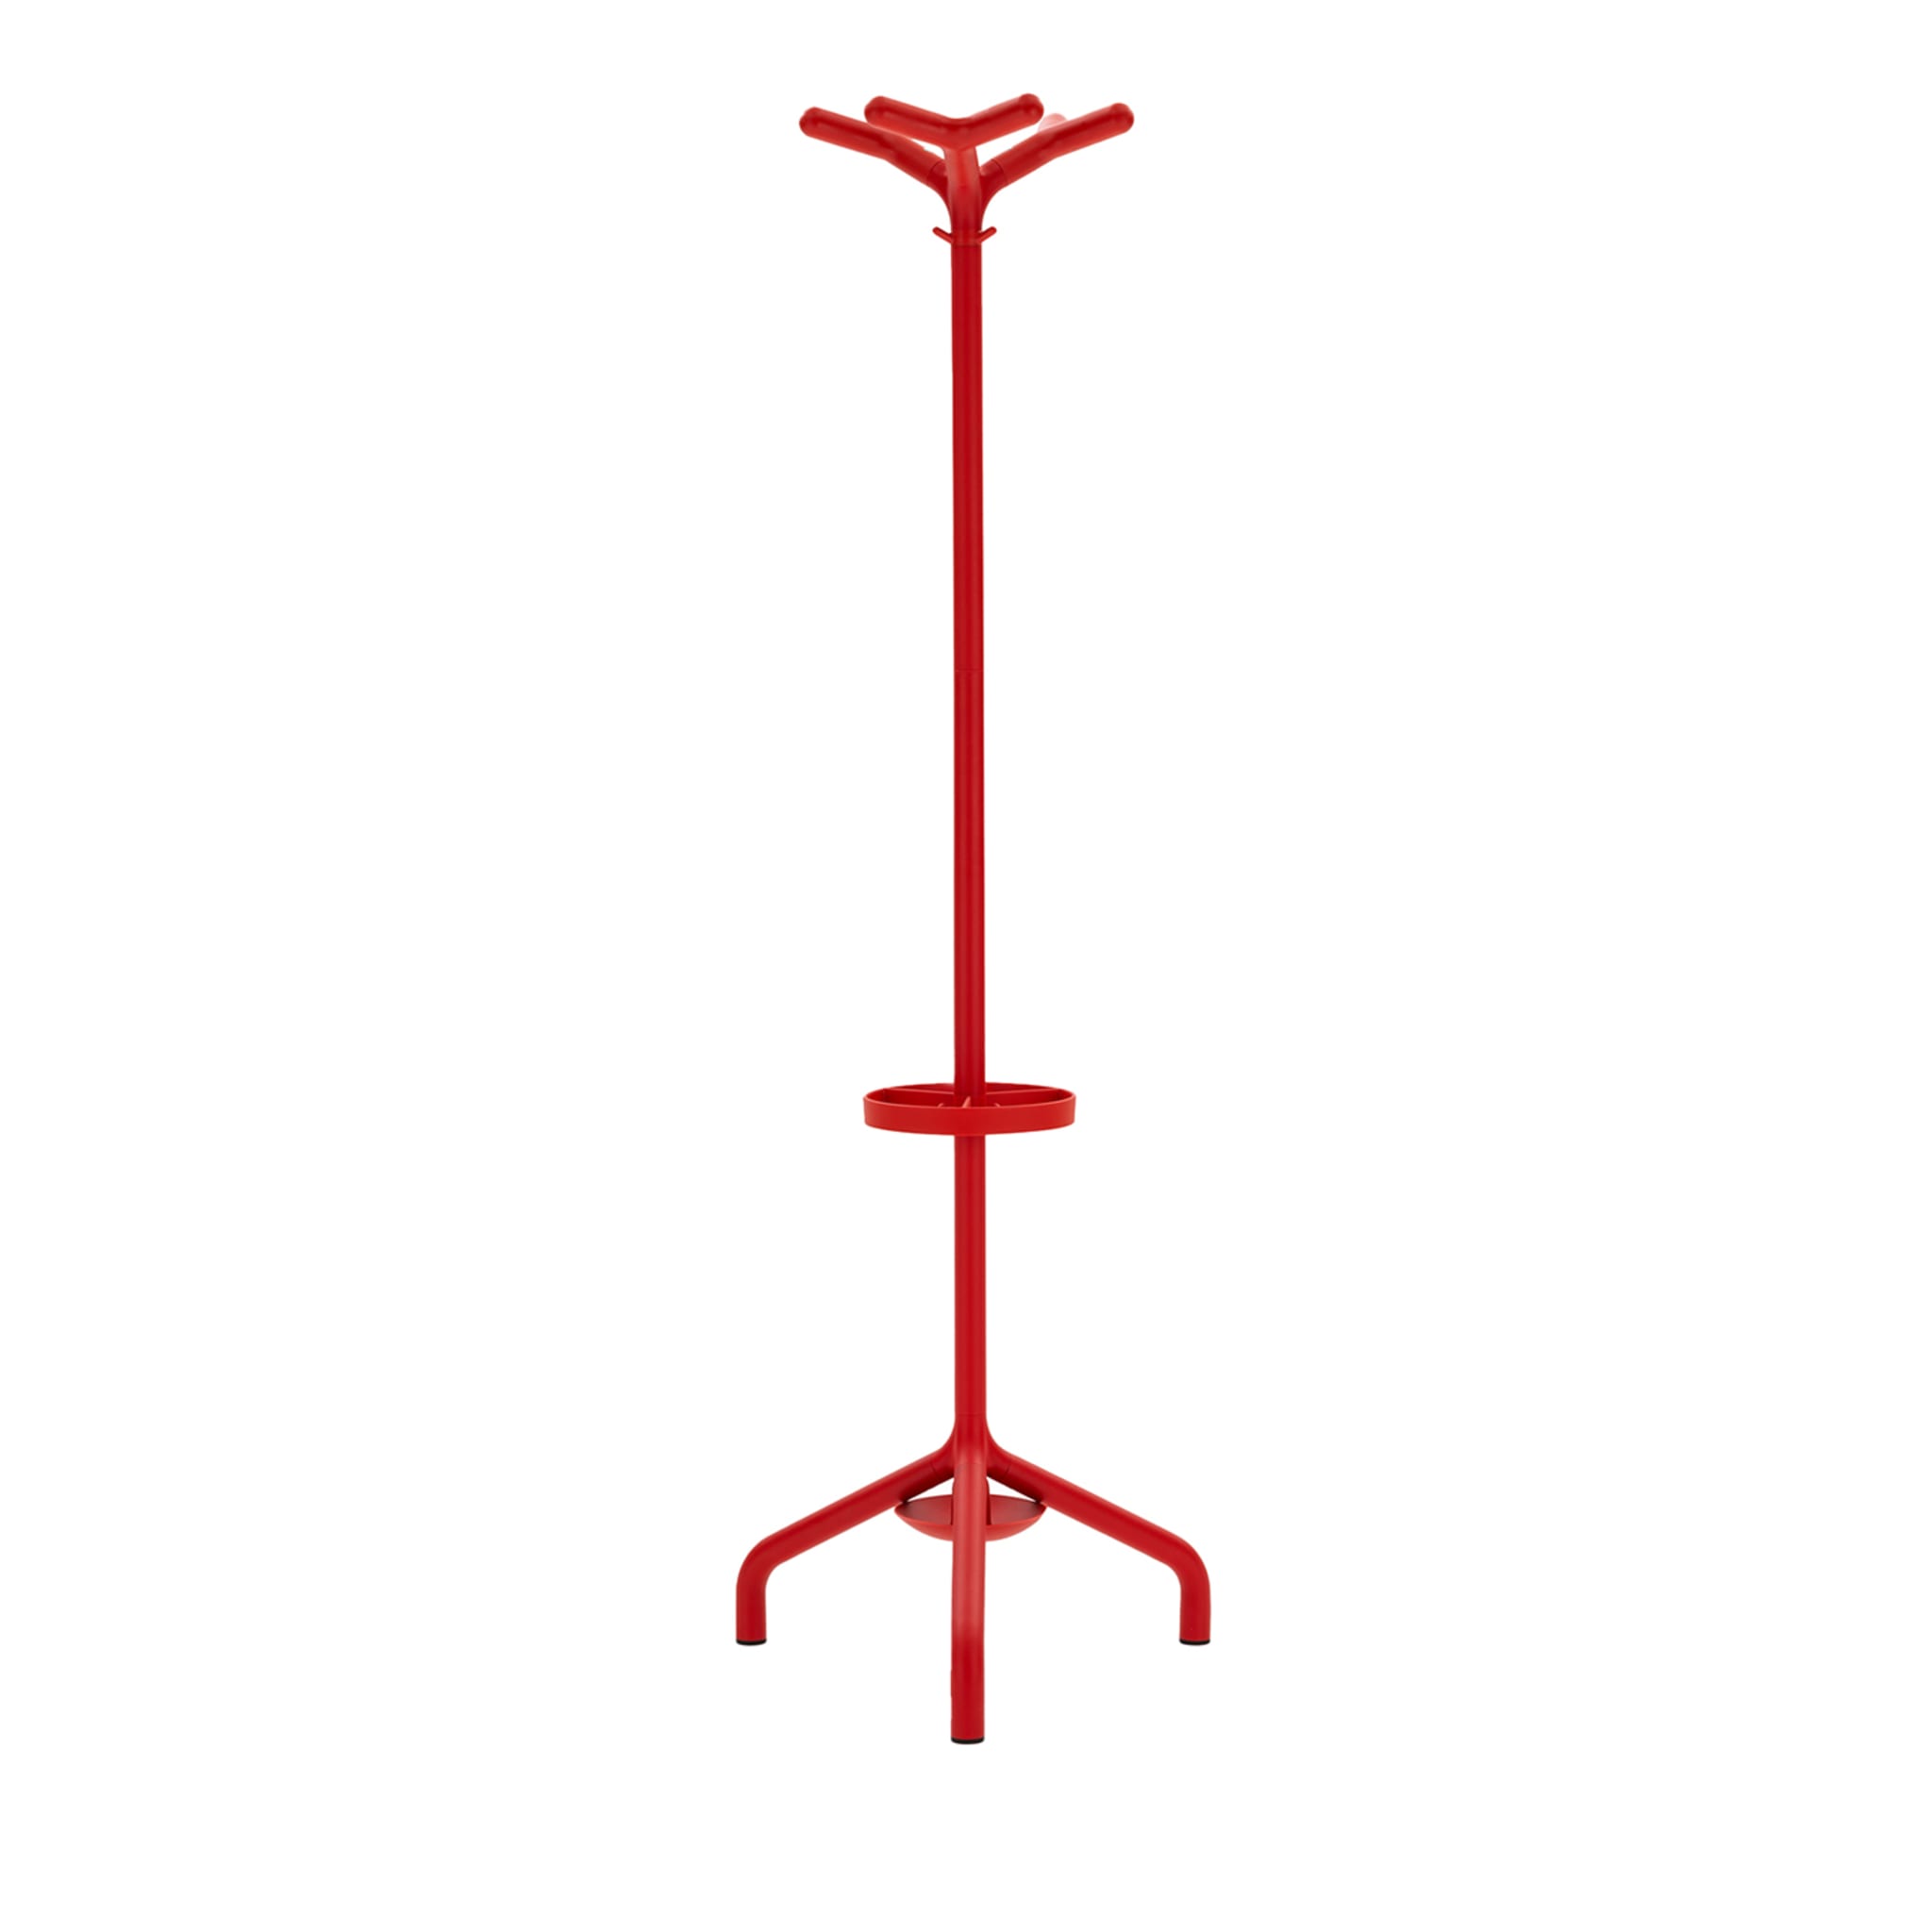 STILO RED COAT STAND von Basaglia + Rota Nodari - Hauptansicht